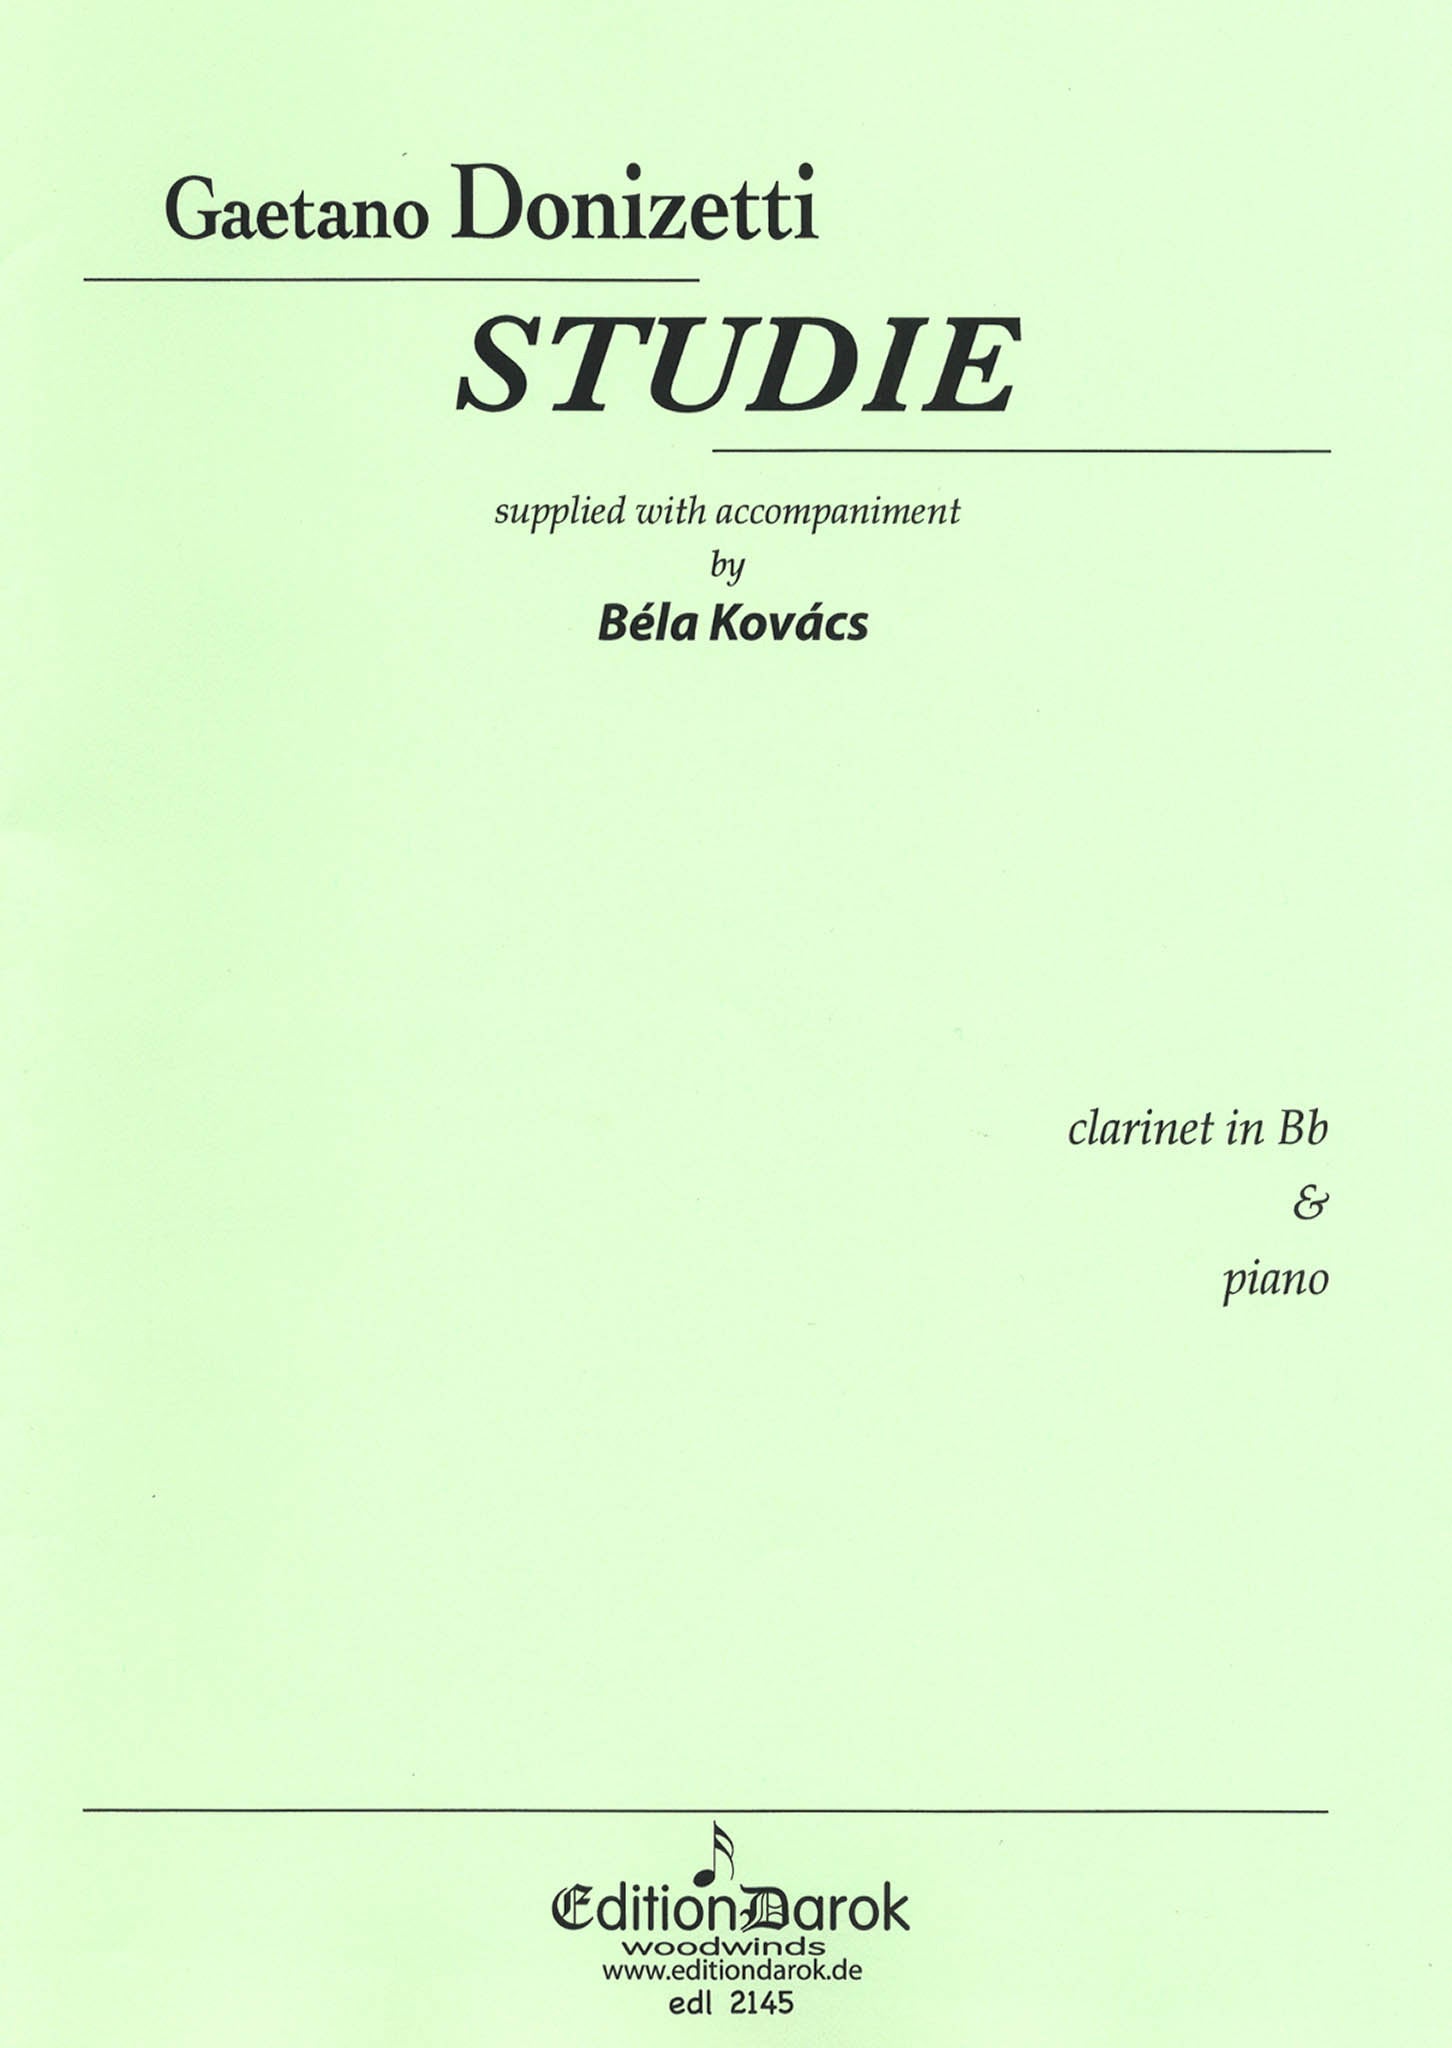 Donizetti Study No. 1 with piano accompaniment Cover